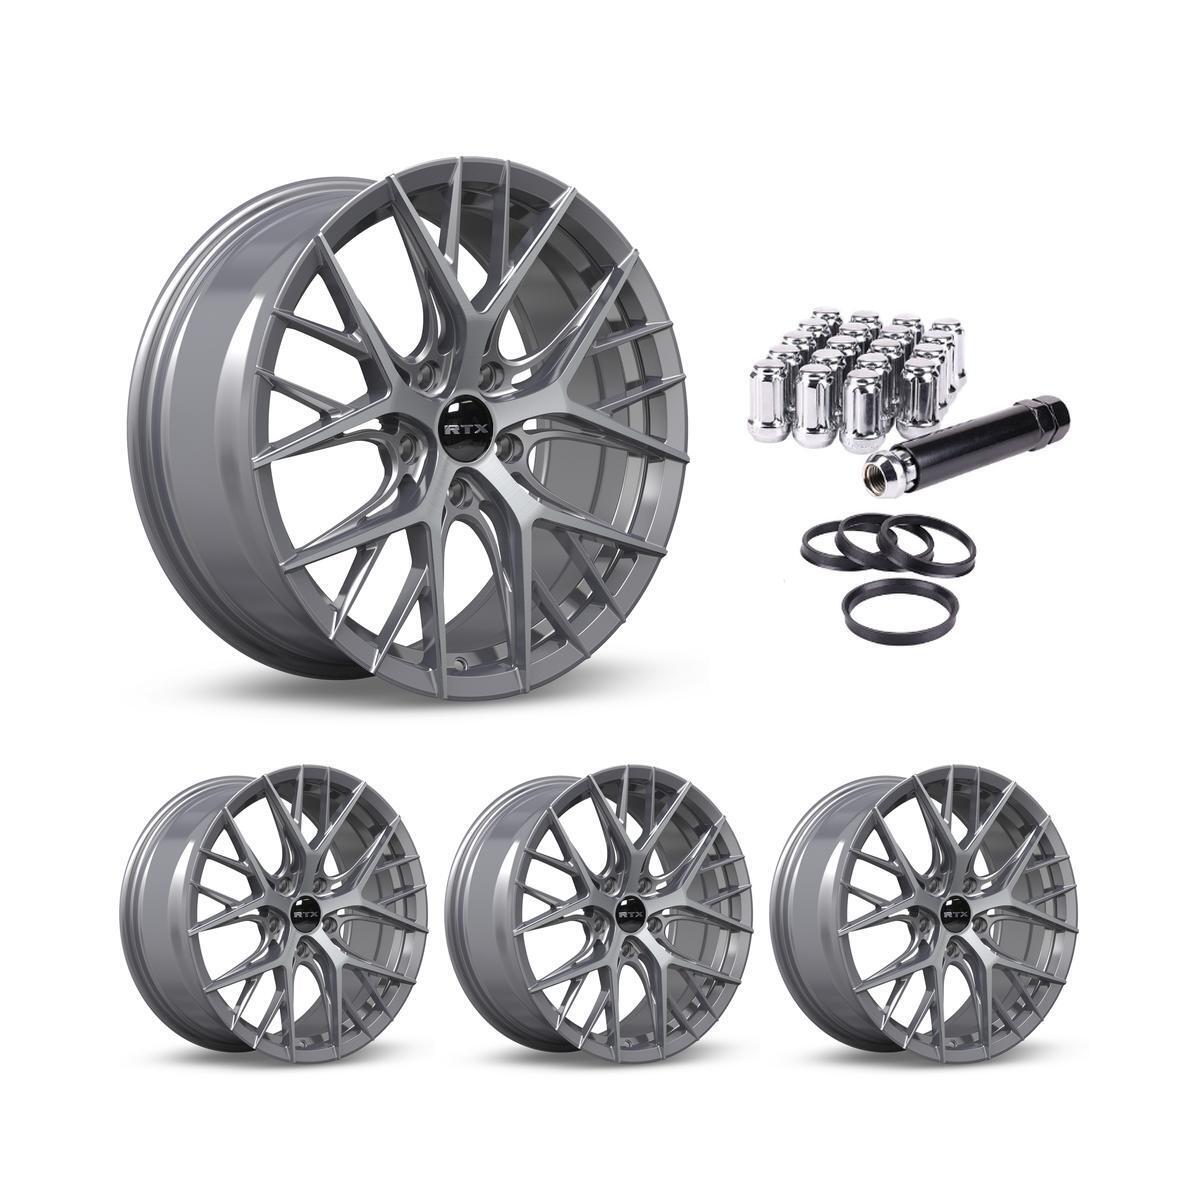 Set of 4 RTX Valkyrie Gray Alloy Wheel Rims for Acura Honda P38188 17x7.5 17 Inc